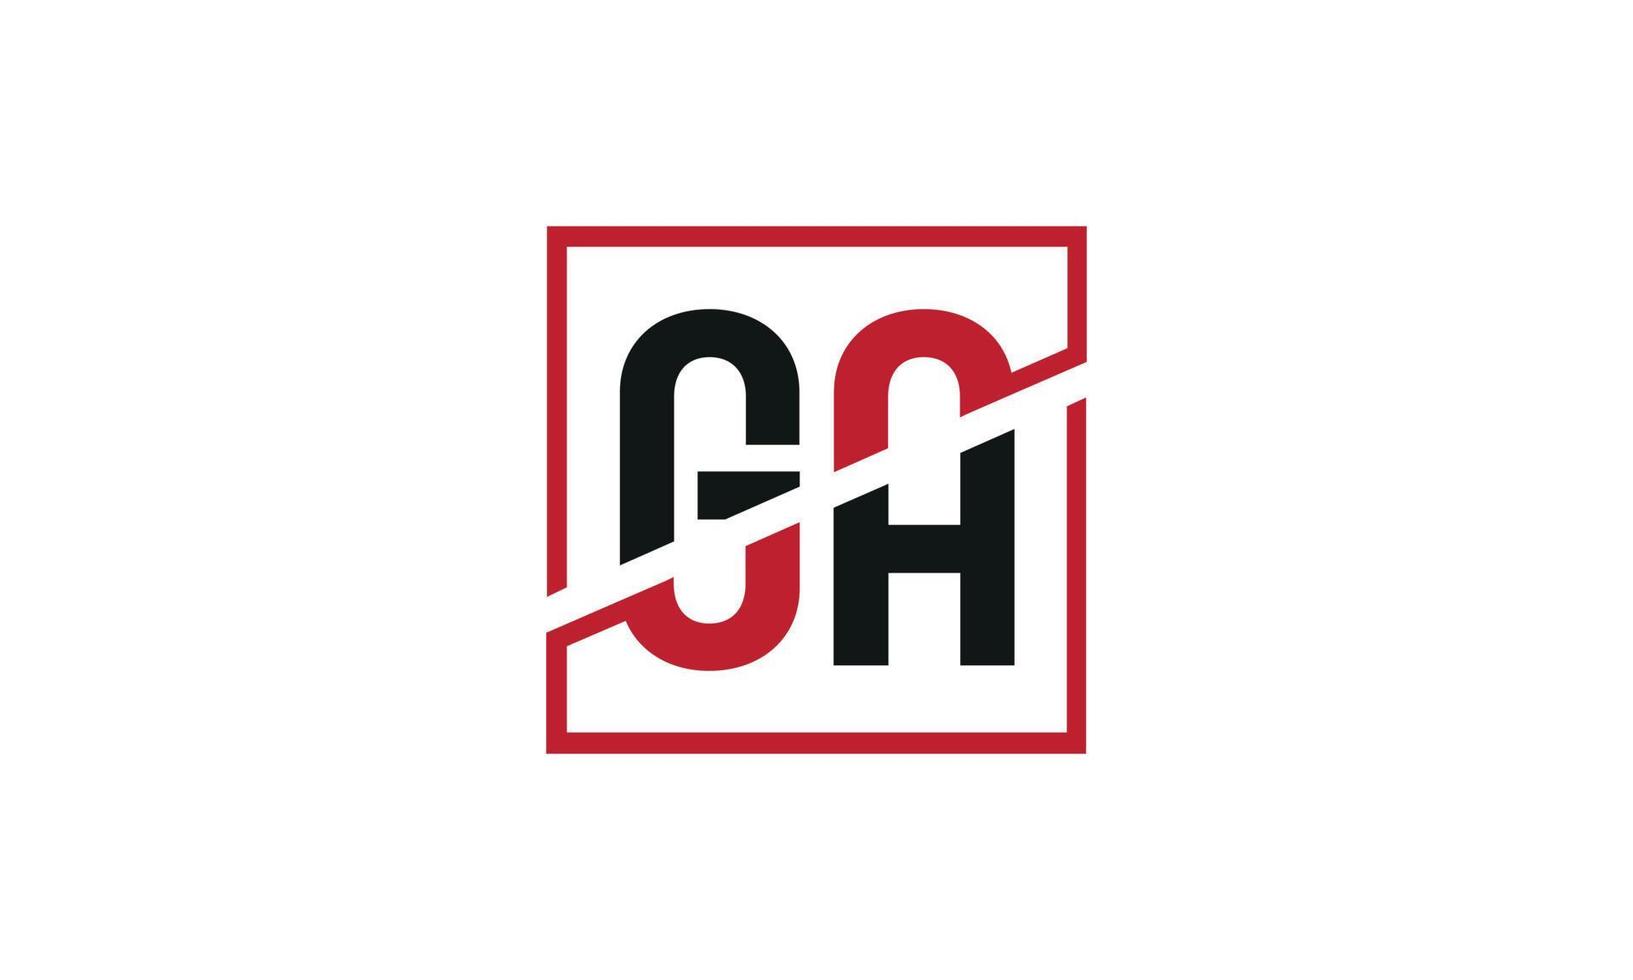 création de logo ga. conception initiale du monogramme du logo de la lettre ga en noir et rouge avec une forme carrée. vecteur professionnel